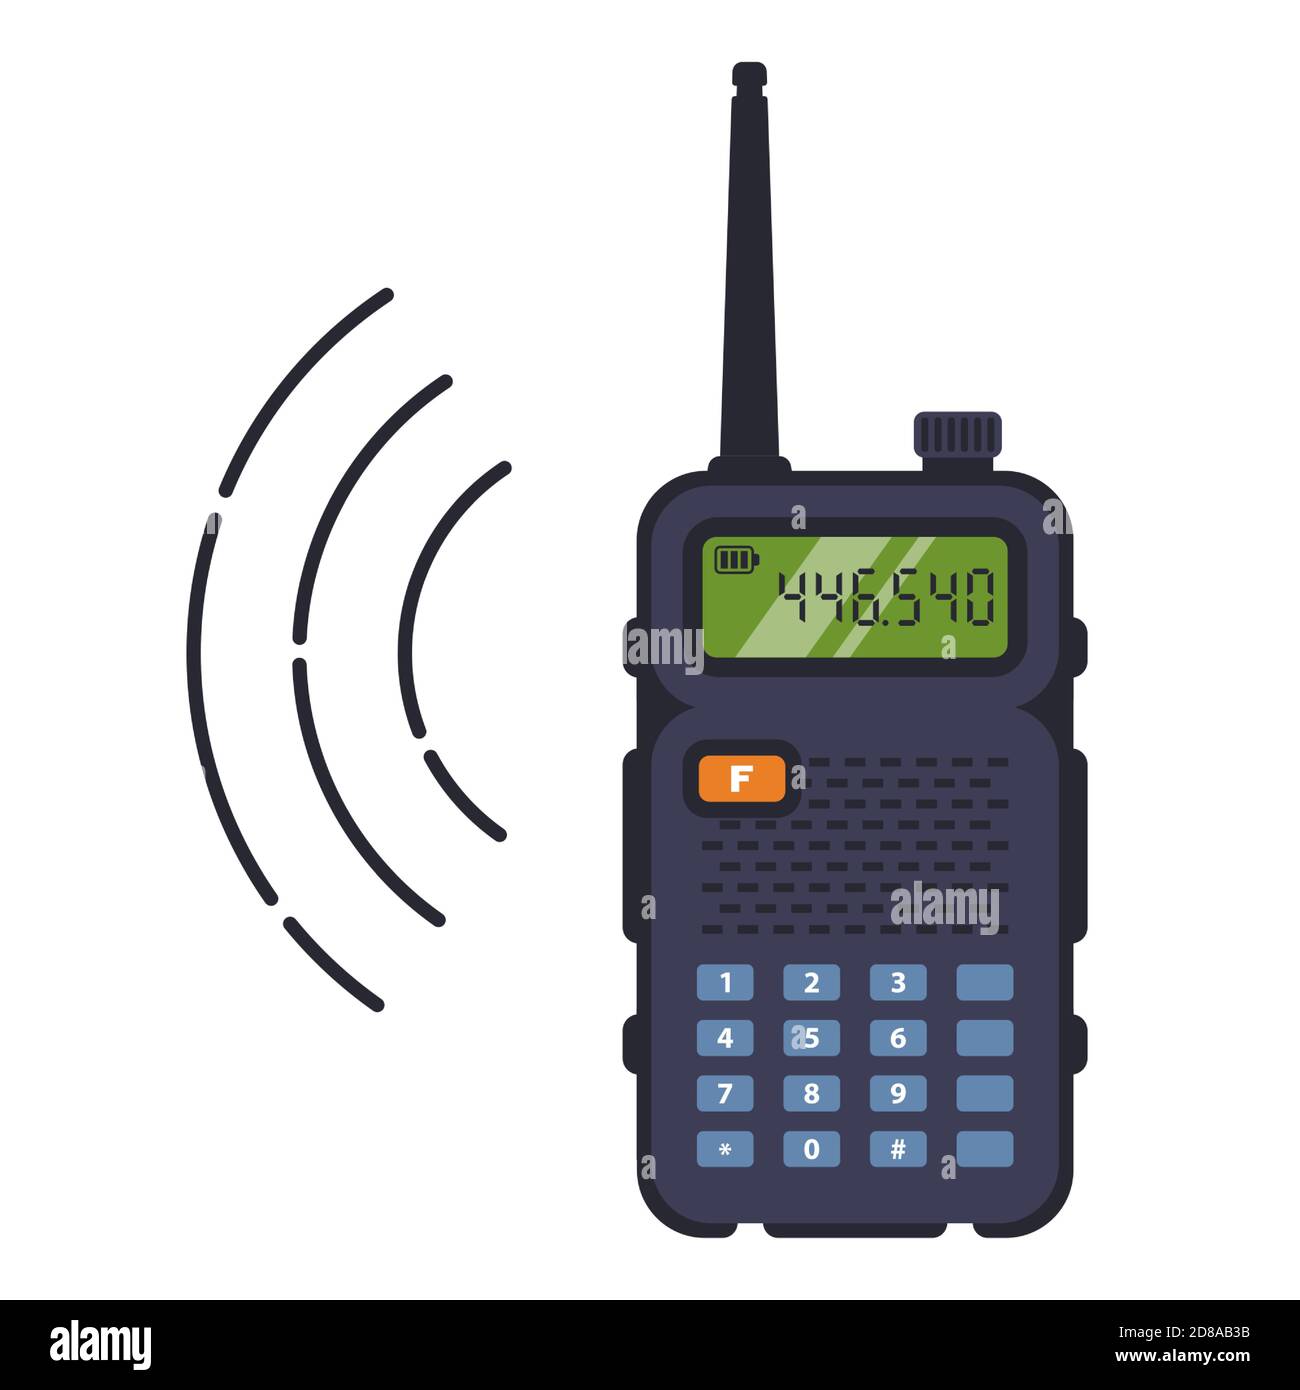 talkie-walkie noir avec antenne pour la communication sur une distance.  capter le signal de la radio. illustration vectorielle plate isolée sur  fond blanc Image Vectorielle Stock - Alamy